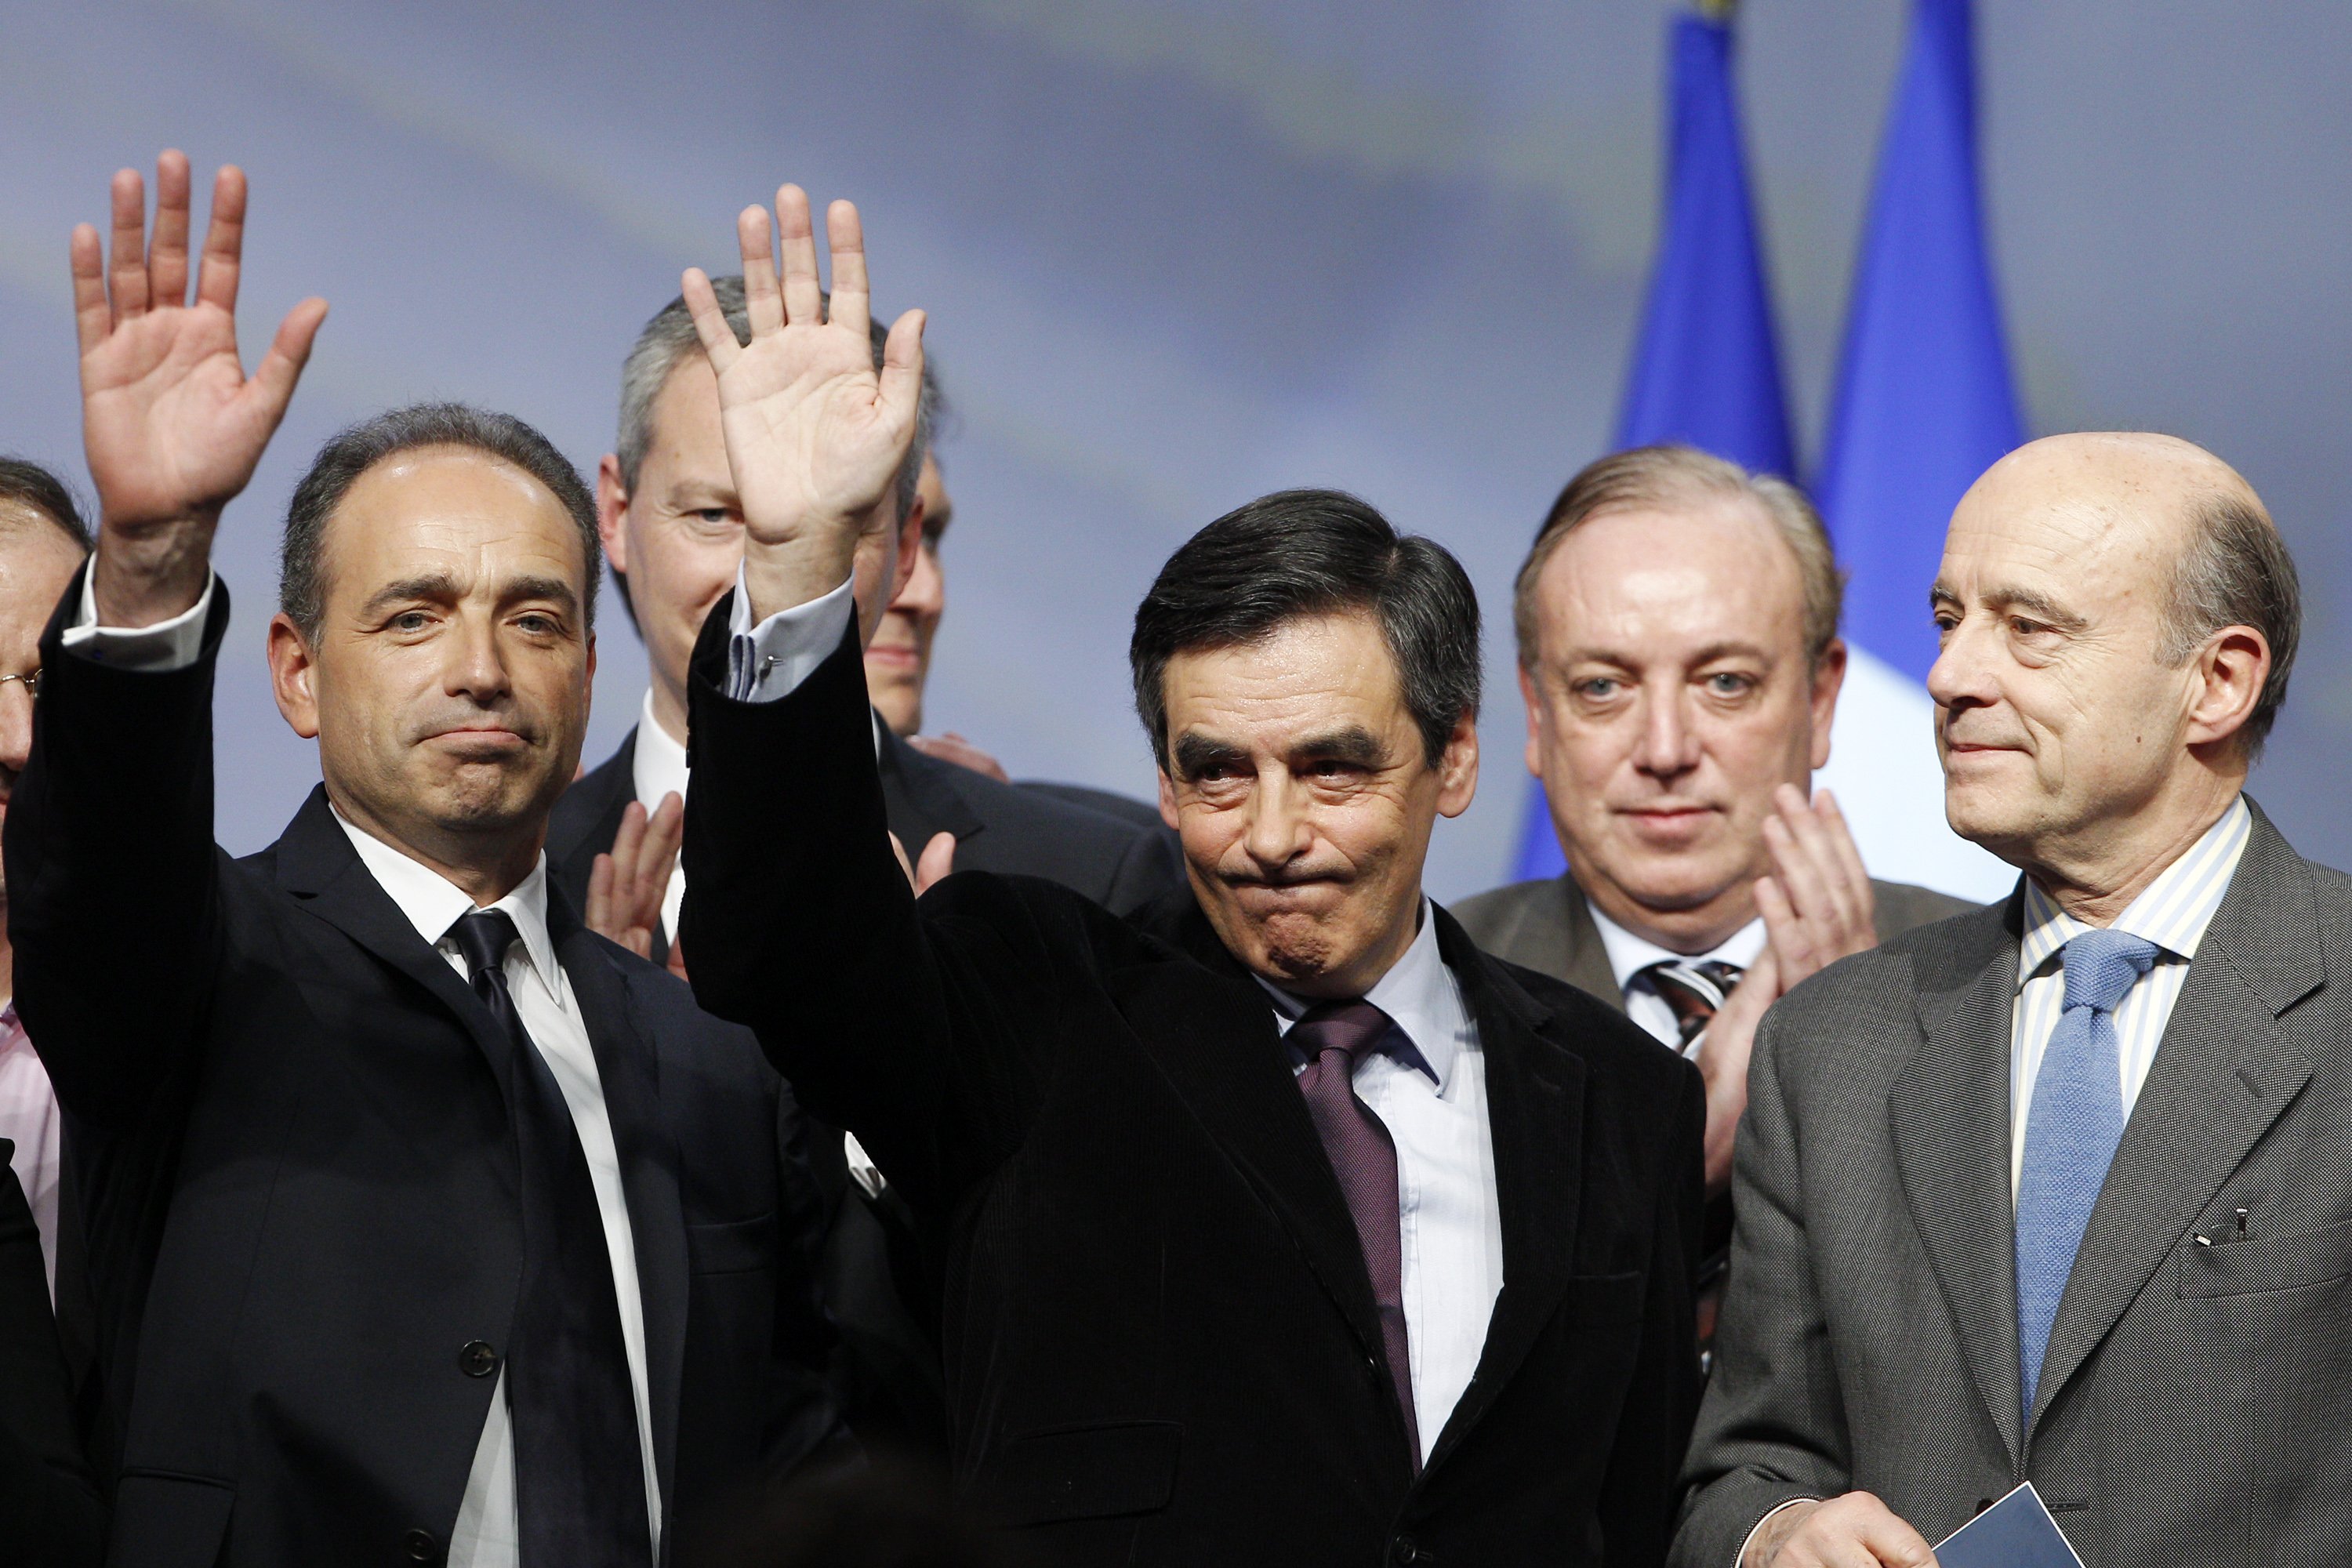 Juppé es descarta com a candidat alternatiu a Fillon